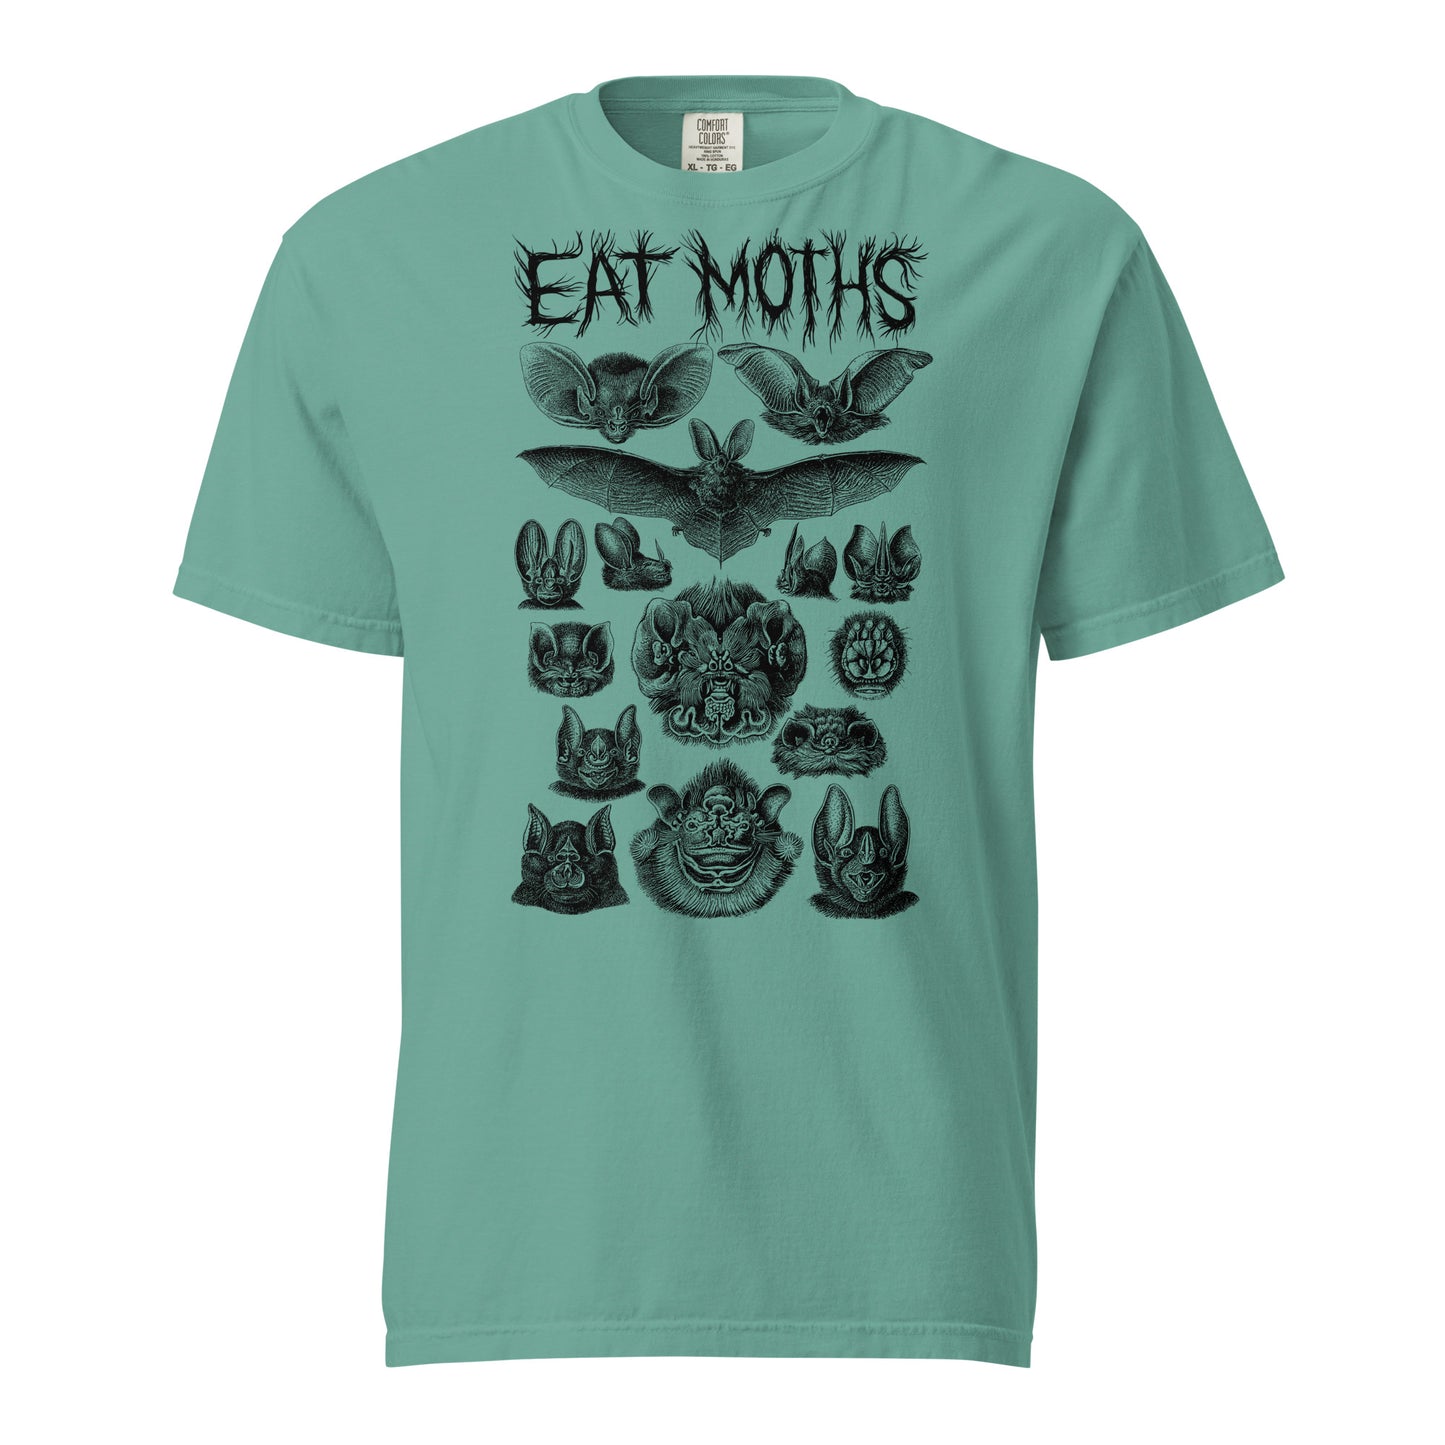 "Eat Moths" Unisex garment-dyed heavyweight t-shirt